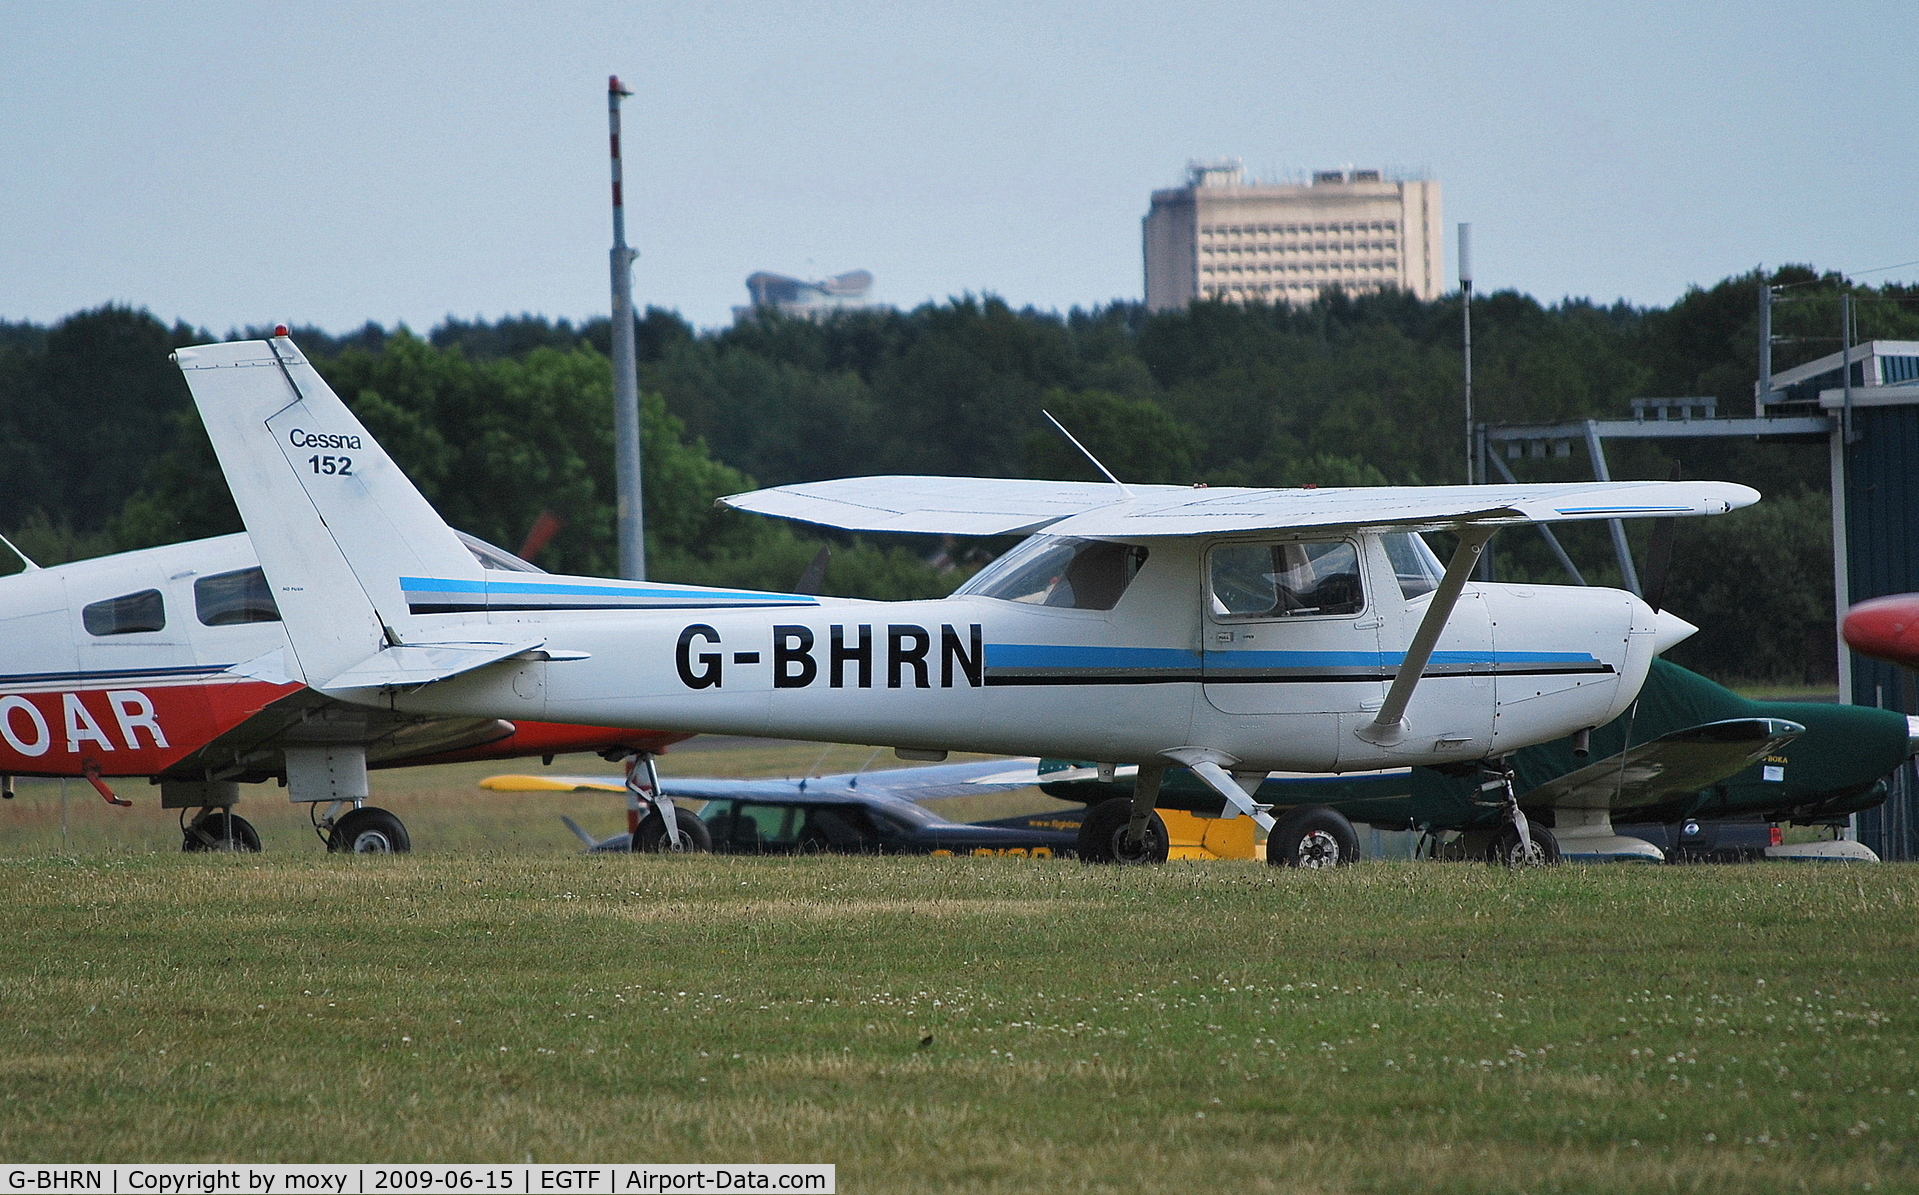 G-BHRN, 1980 Reims F152 C/N 1728, Cessna F152 at Fairoaks